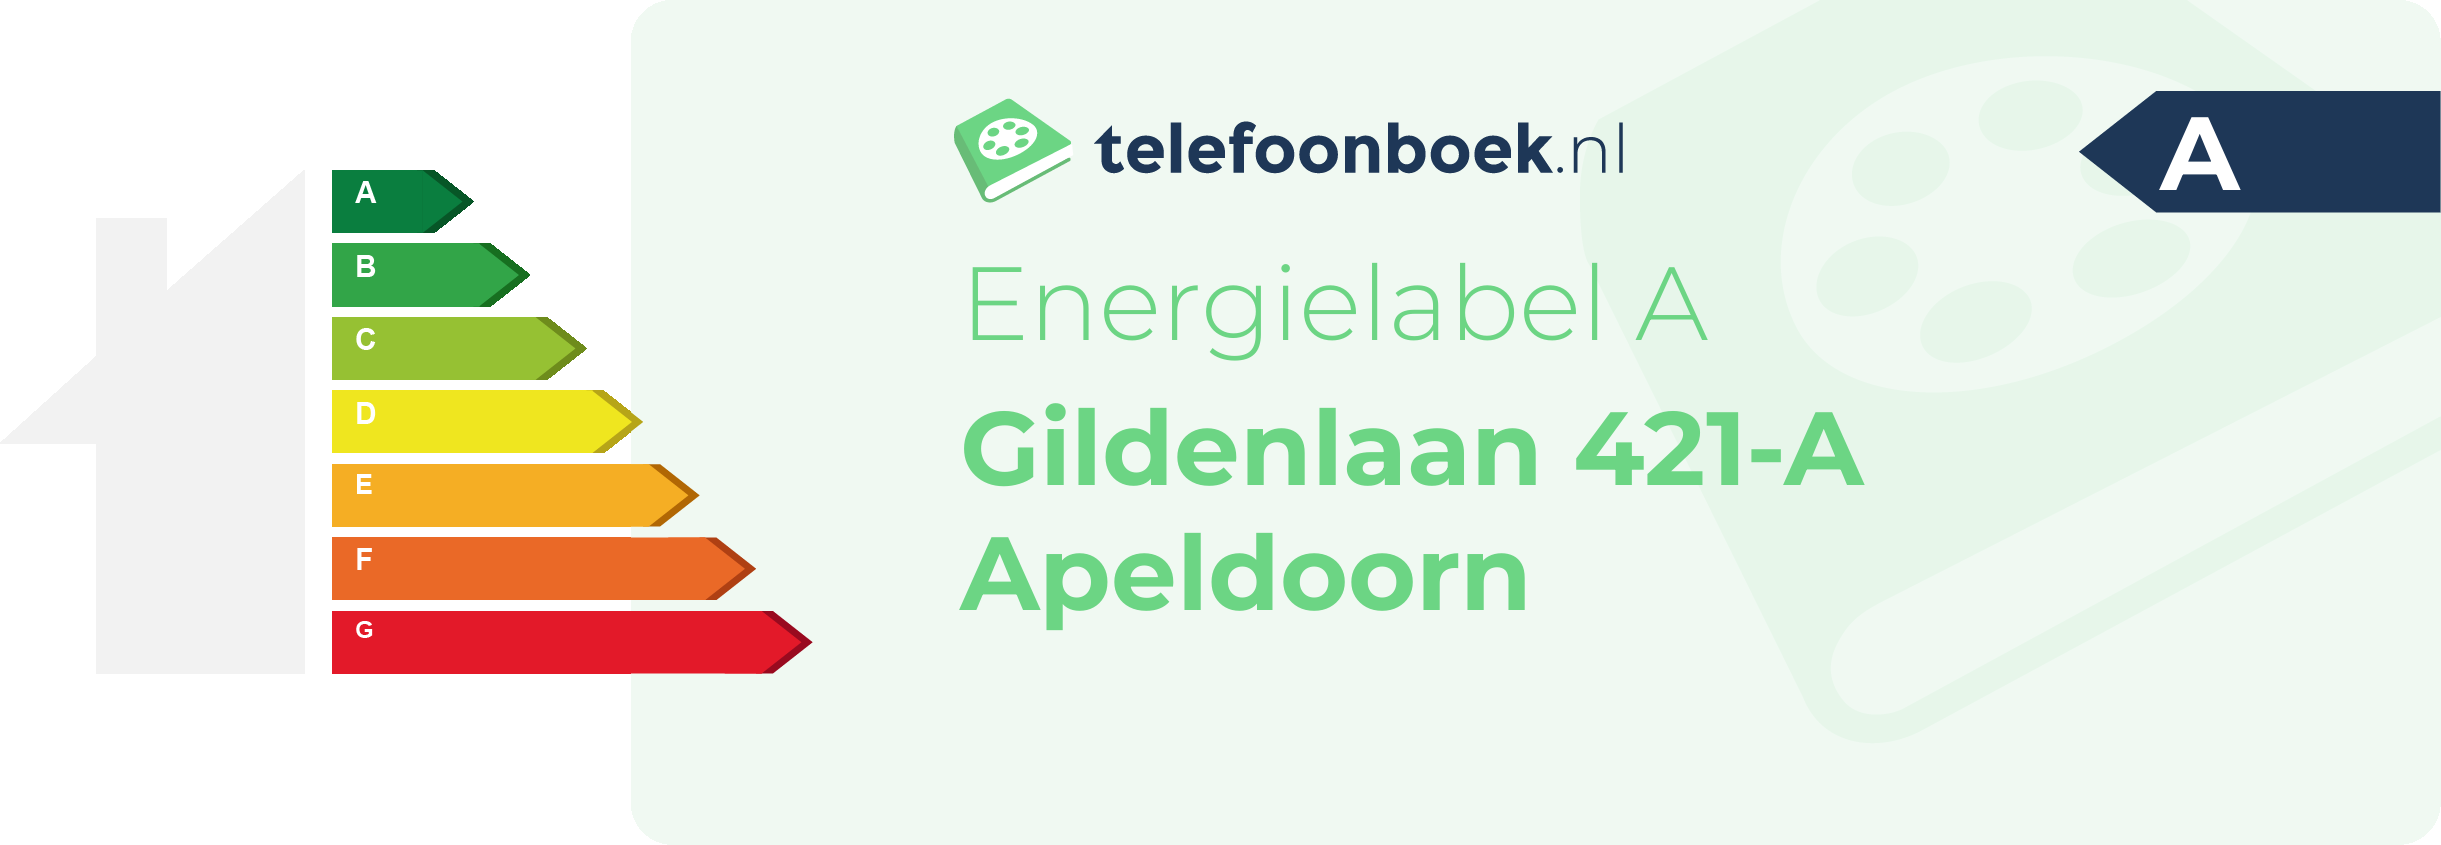 Energielabel Gildenlaan 421-A Apeldoorn